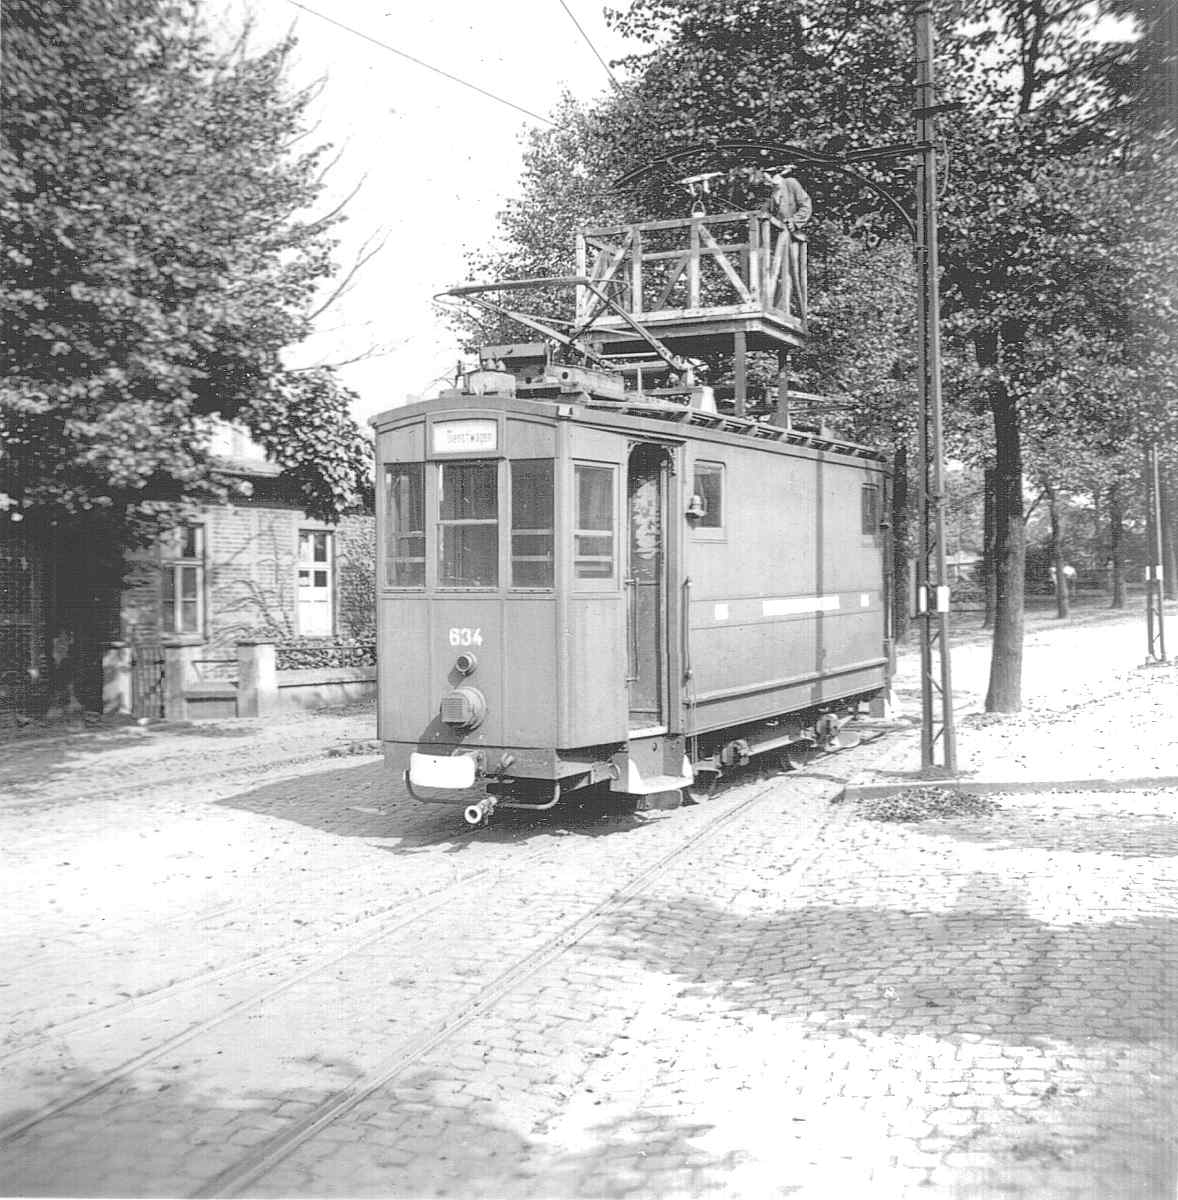 WuppertalerStrassenbahn/0_1_Tram_Wuppertal_Wagen634_Dienstwagen_Arbeitsbuehnenfahrzeug_mit_Scheinwerfer-Verdunkelung_um_1940